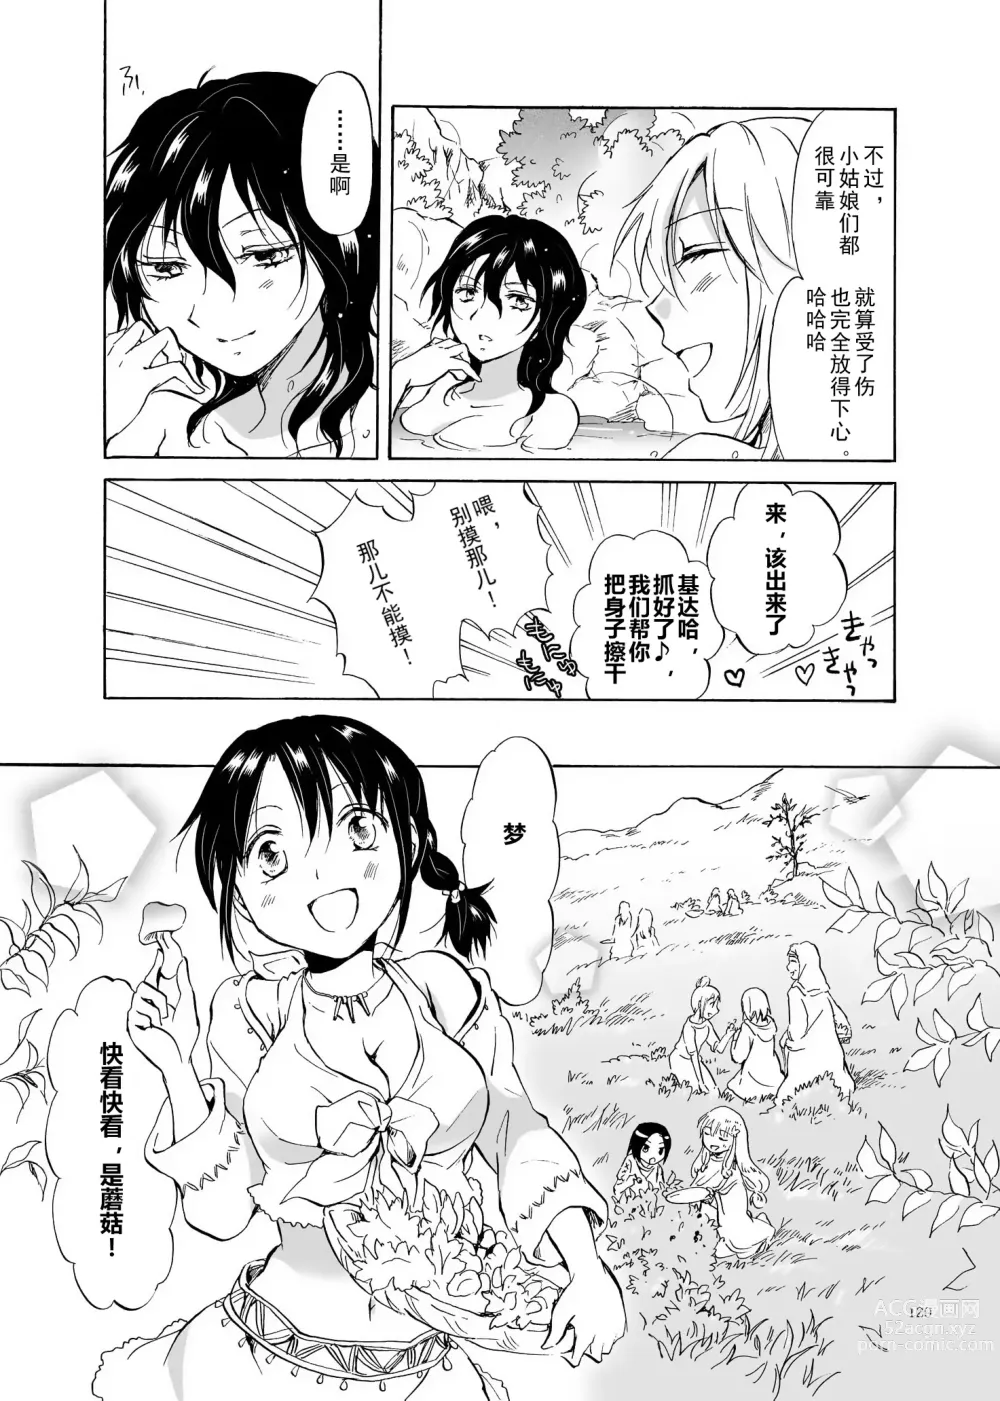 Page 129 of doujinshi EARTH GIRLS